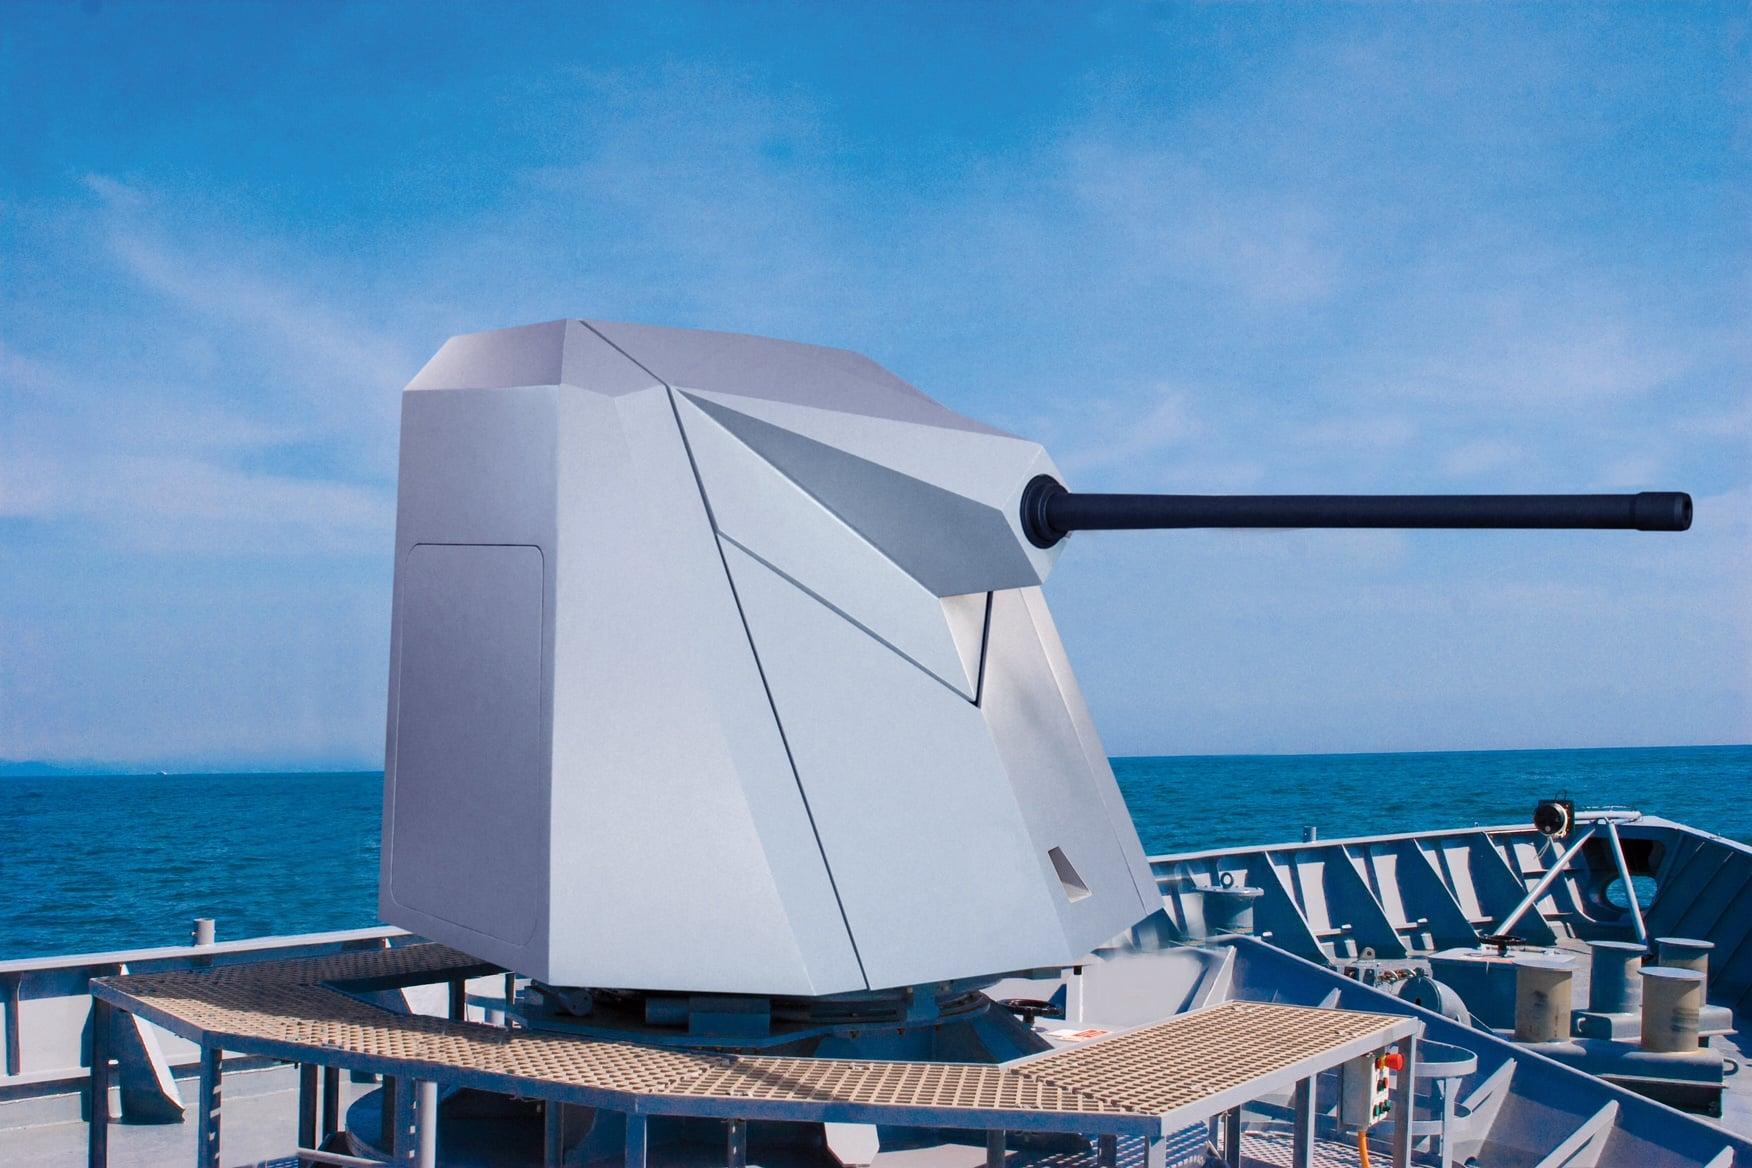 Leonardo‘s Marlin 40 naval remote weapon system